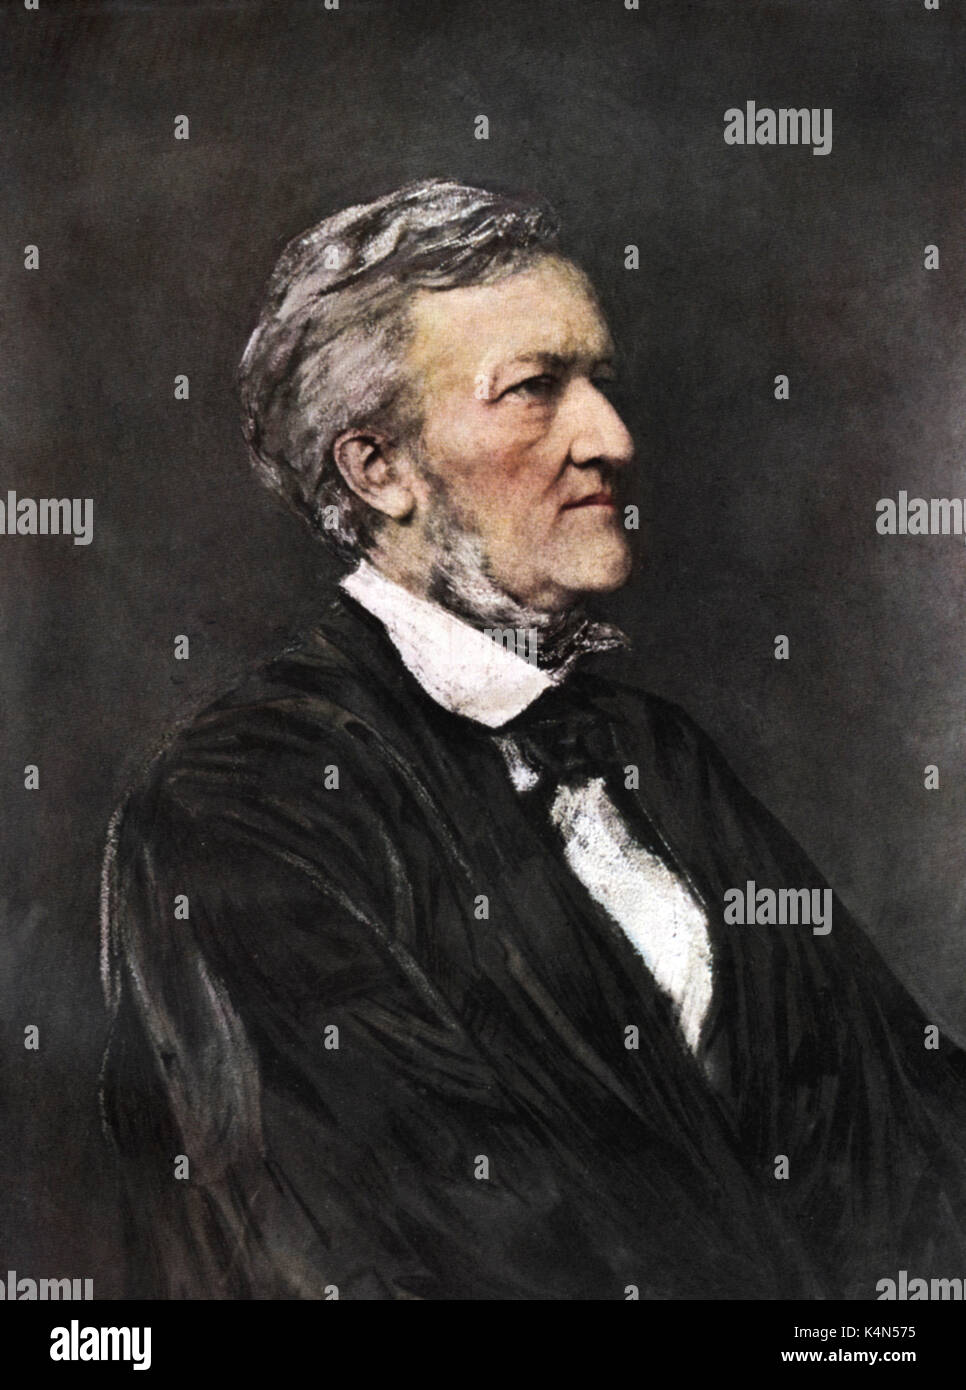 Richard Wagner - Abbildung von Hubert Herkomer, 1877 Deutscher Komponist & Autor, 22. Mai 1813 - vom 13. Februar 1883. Stockfoto